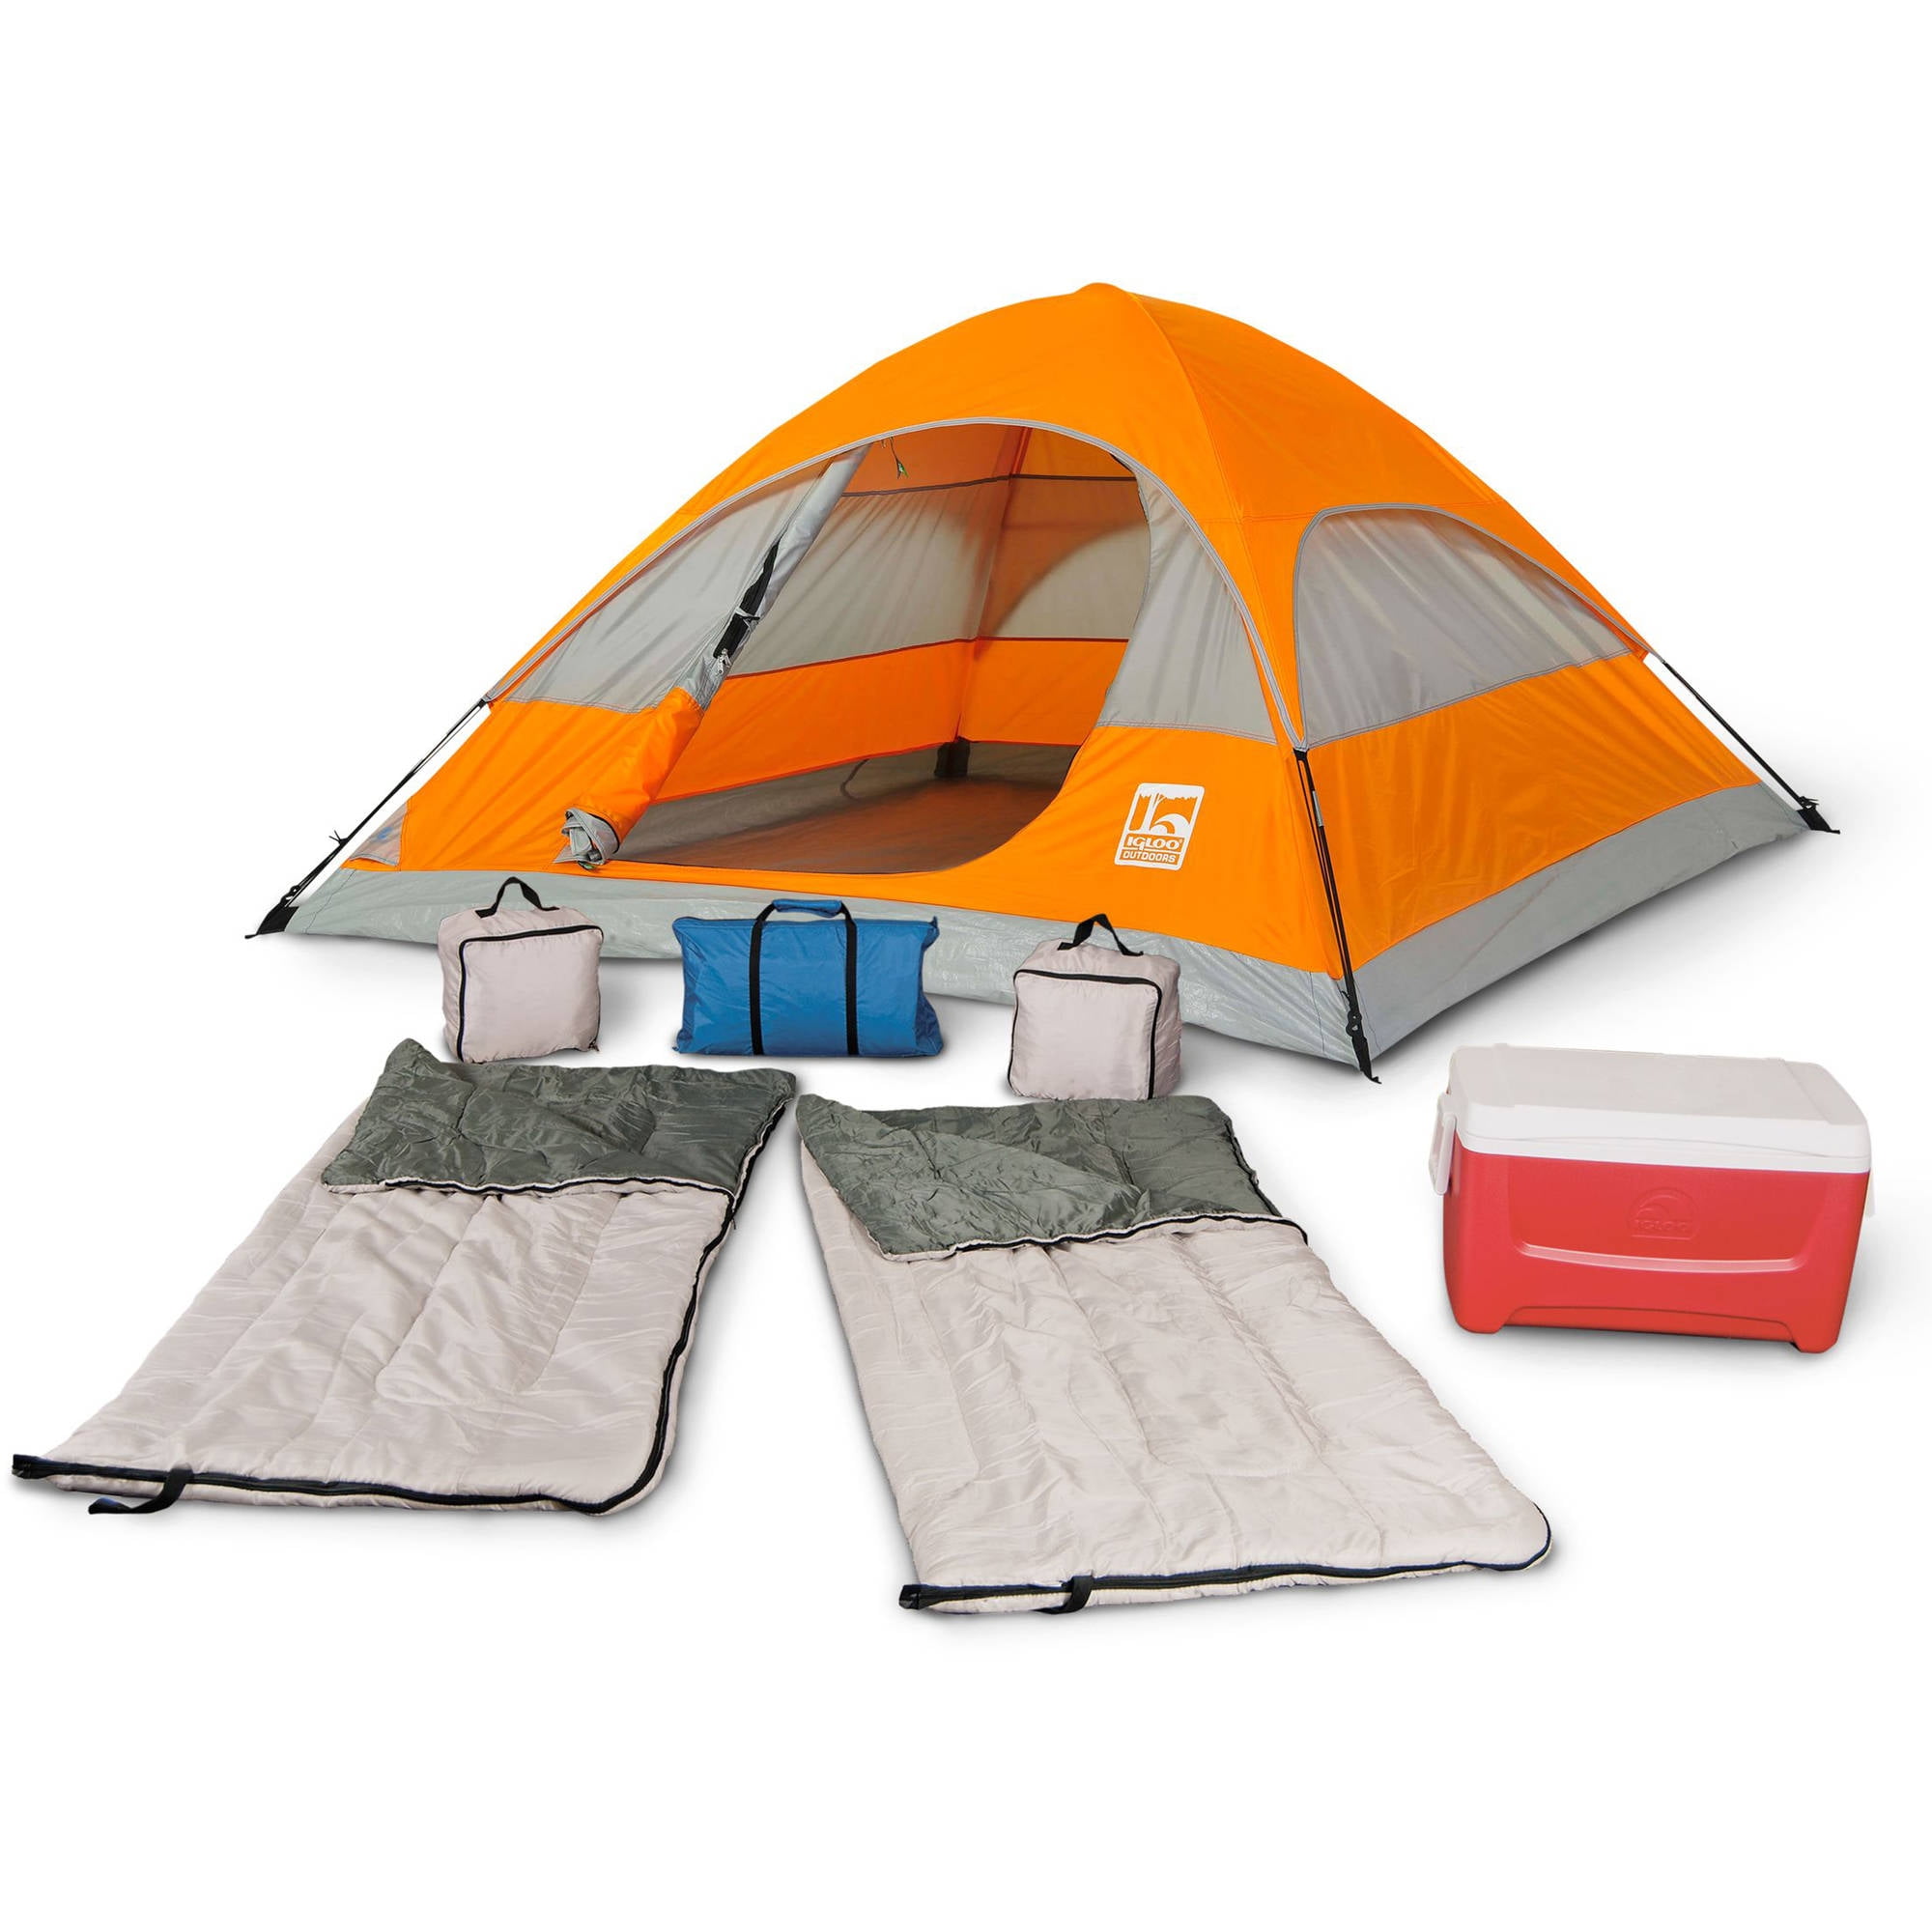 Camping Cooler (48QT) Rental